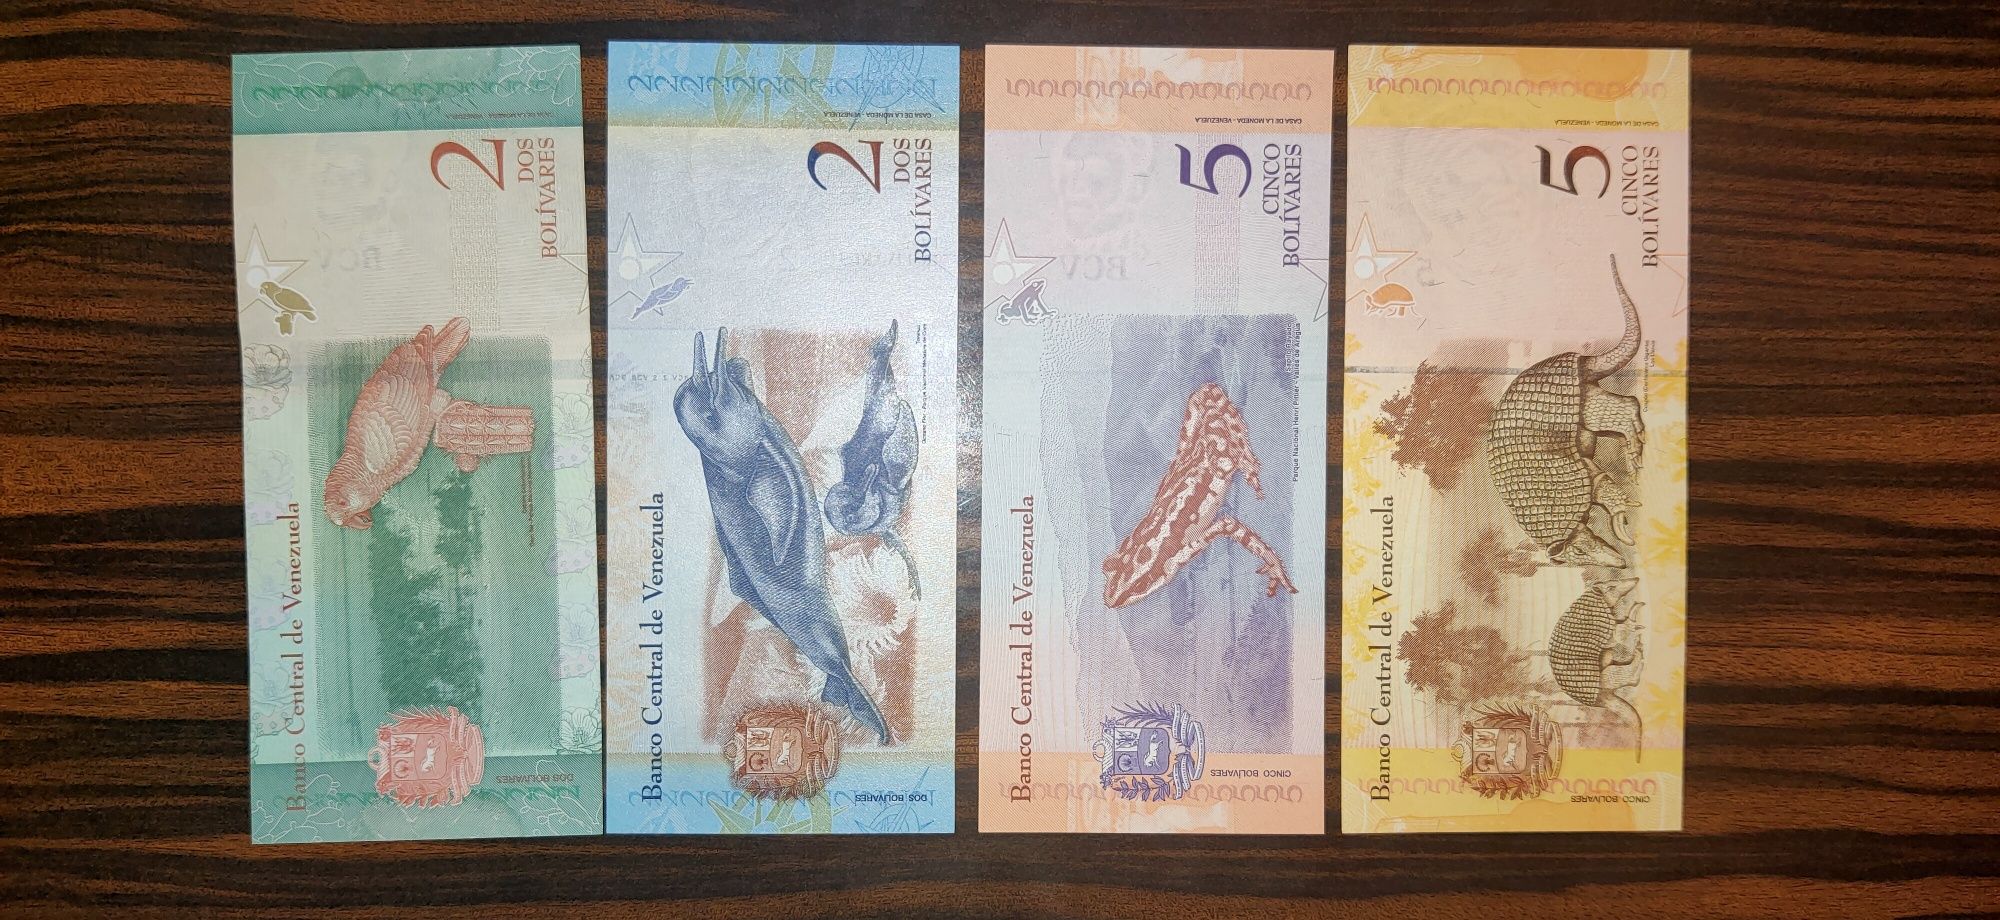 Иностранные банкноты